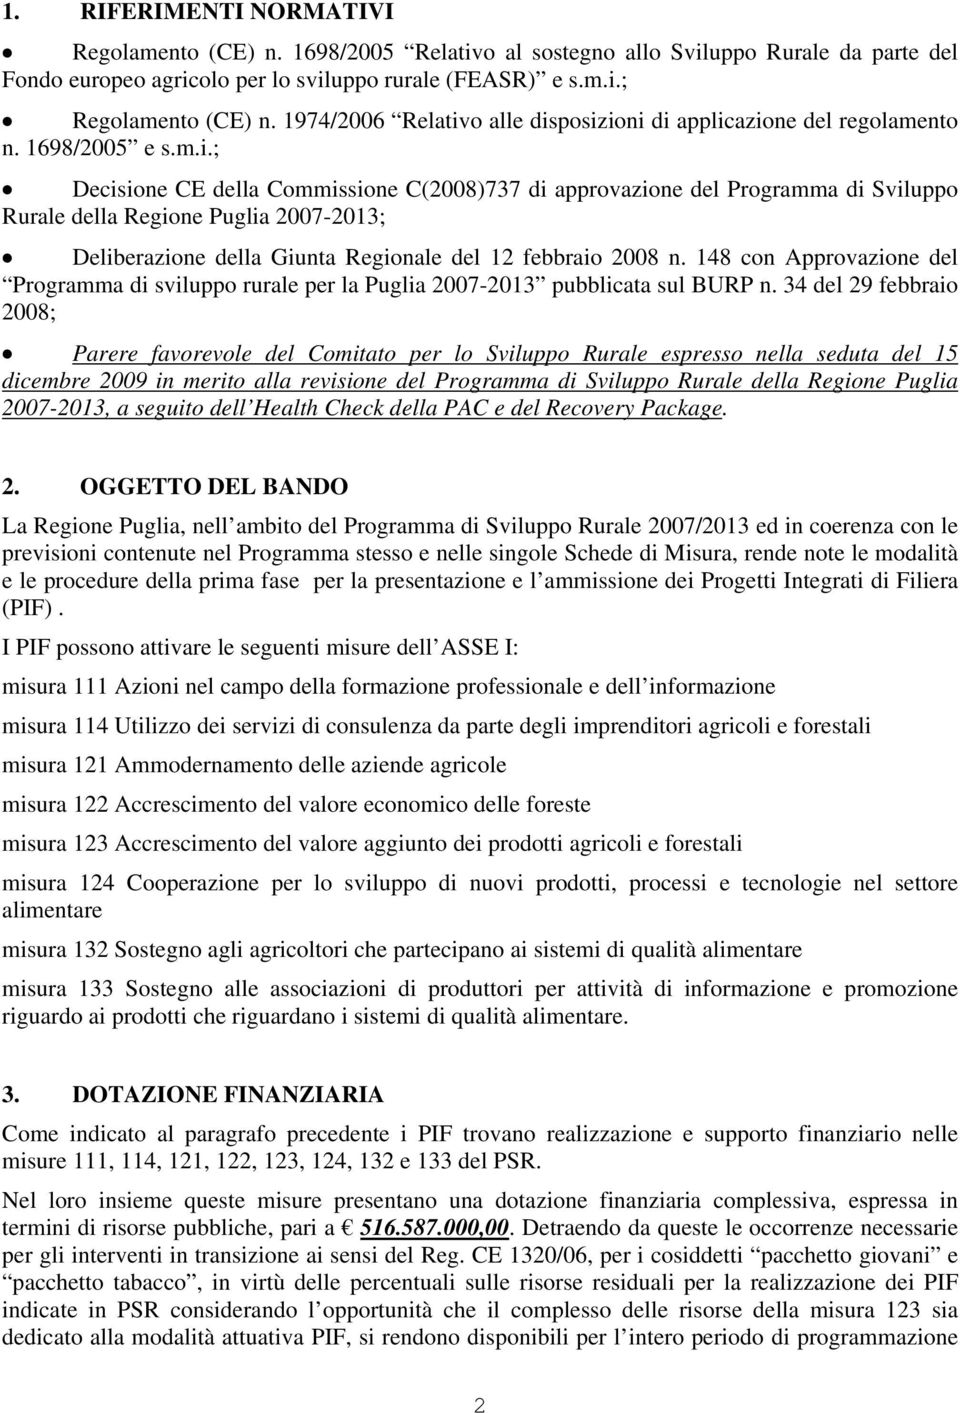 o alle disposizioni di applicazione del regolamento n. 1698/2005 e s.m.i.; Decisione CE della Commissione C(2008)737 di approvazione del Programma di Sviluppo Rurale della Regione Puglia 2007-2013; Deliberazione della Giunta Regionale del 12 febbraio 2008 n.